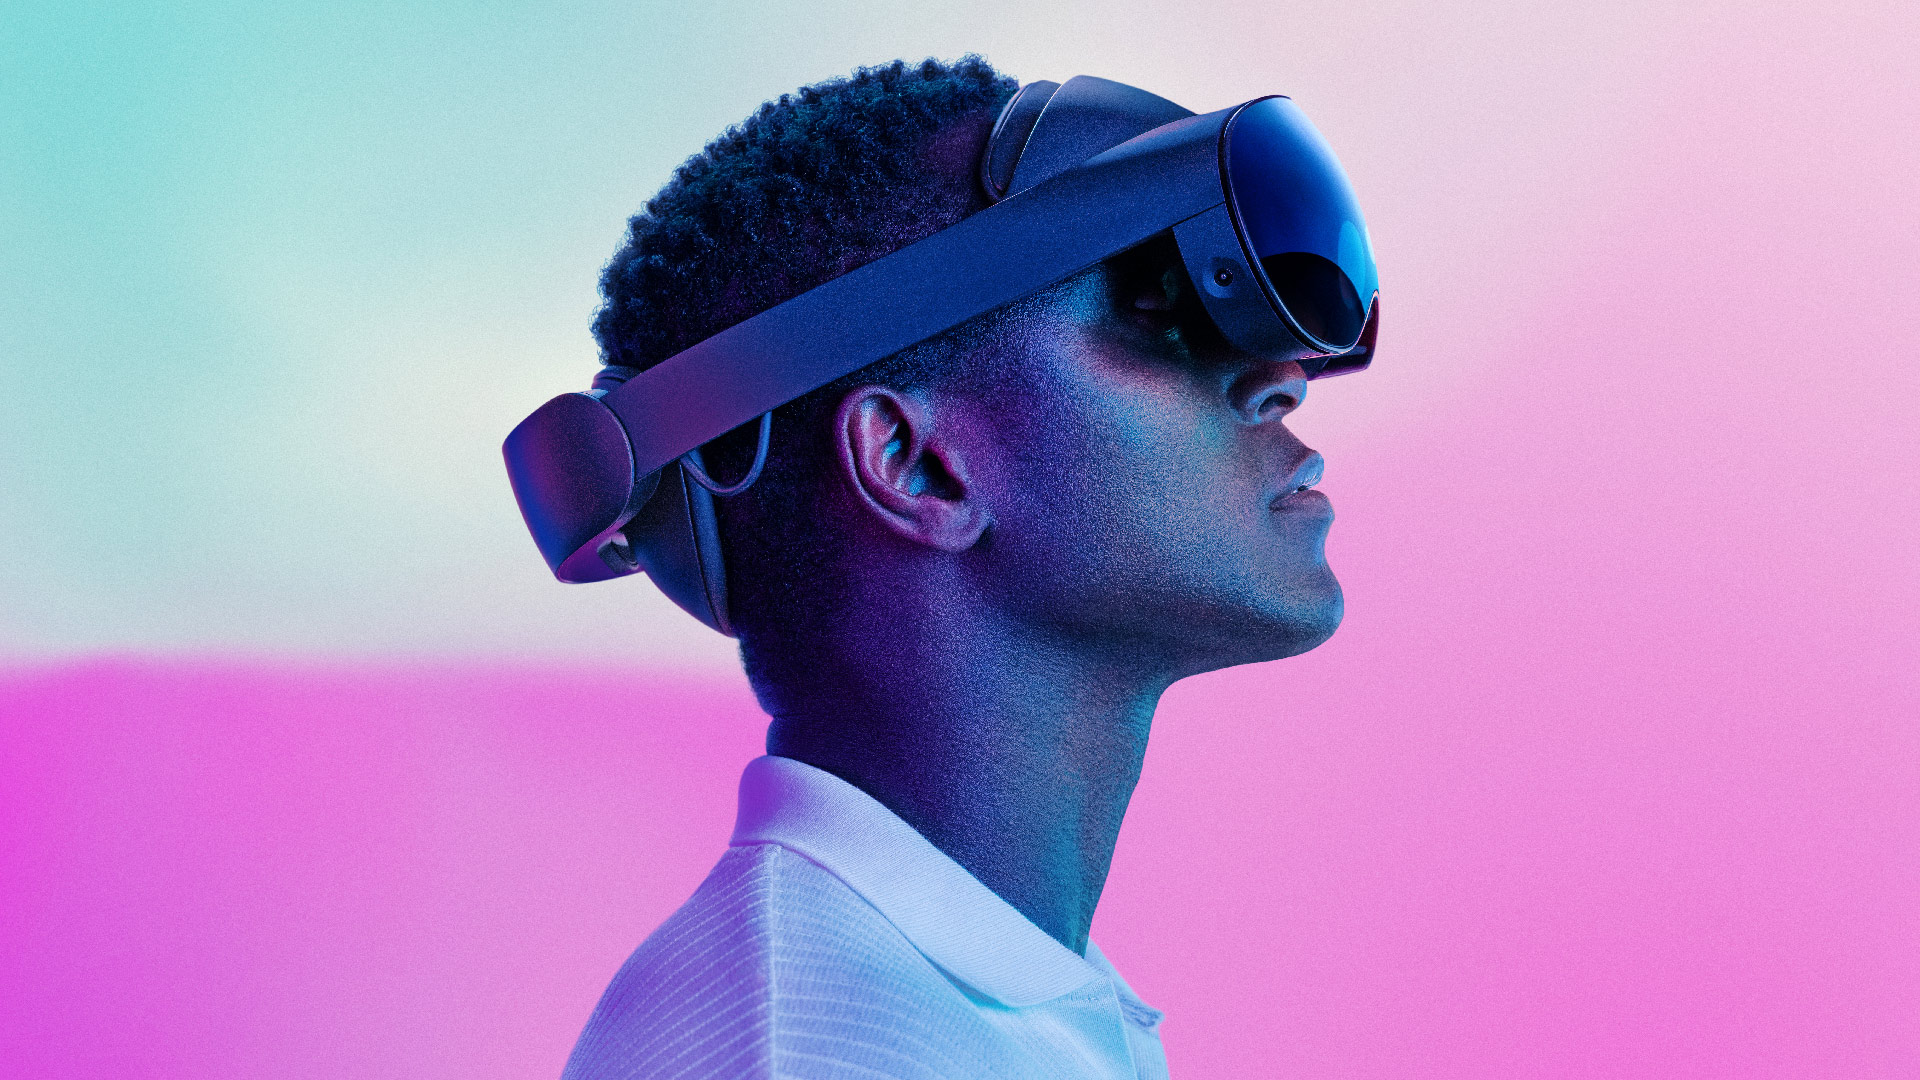 “Apakah kita akhirnya mendapatkan realitas virtual liar yang nyata?”